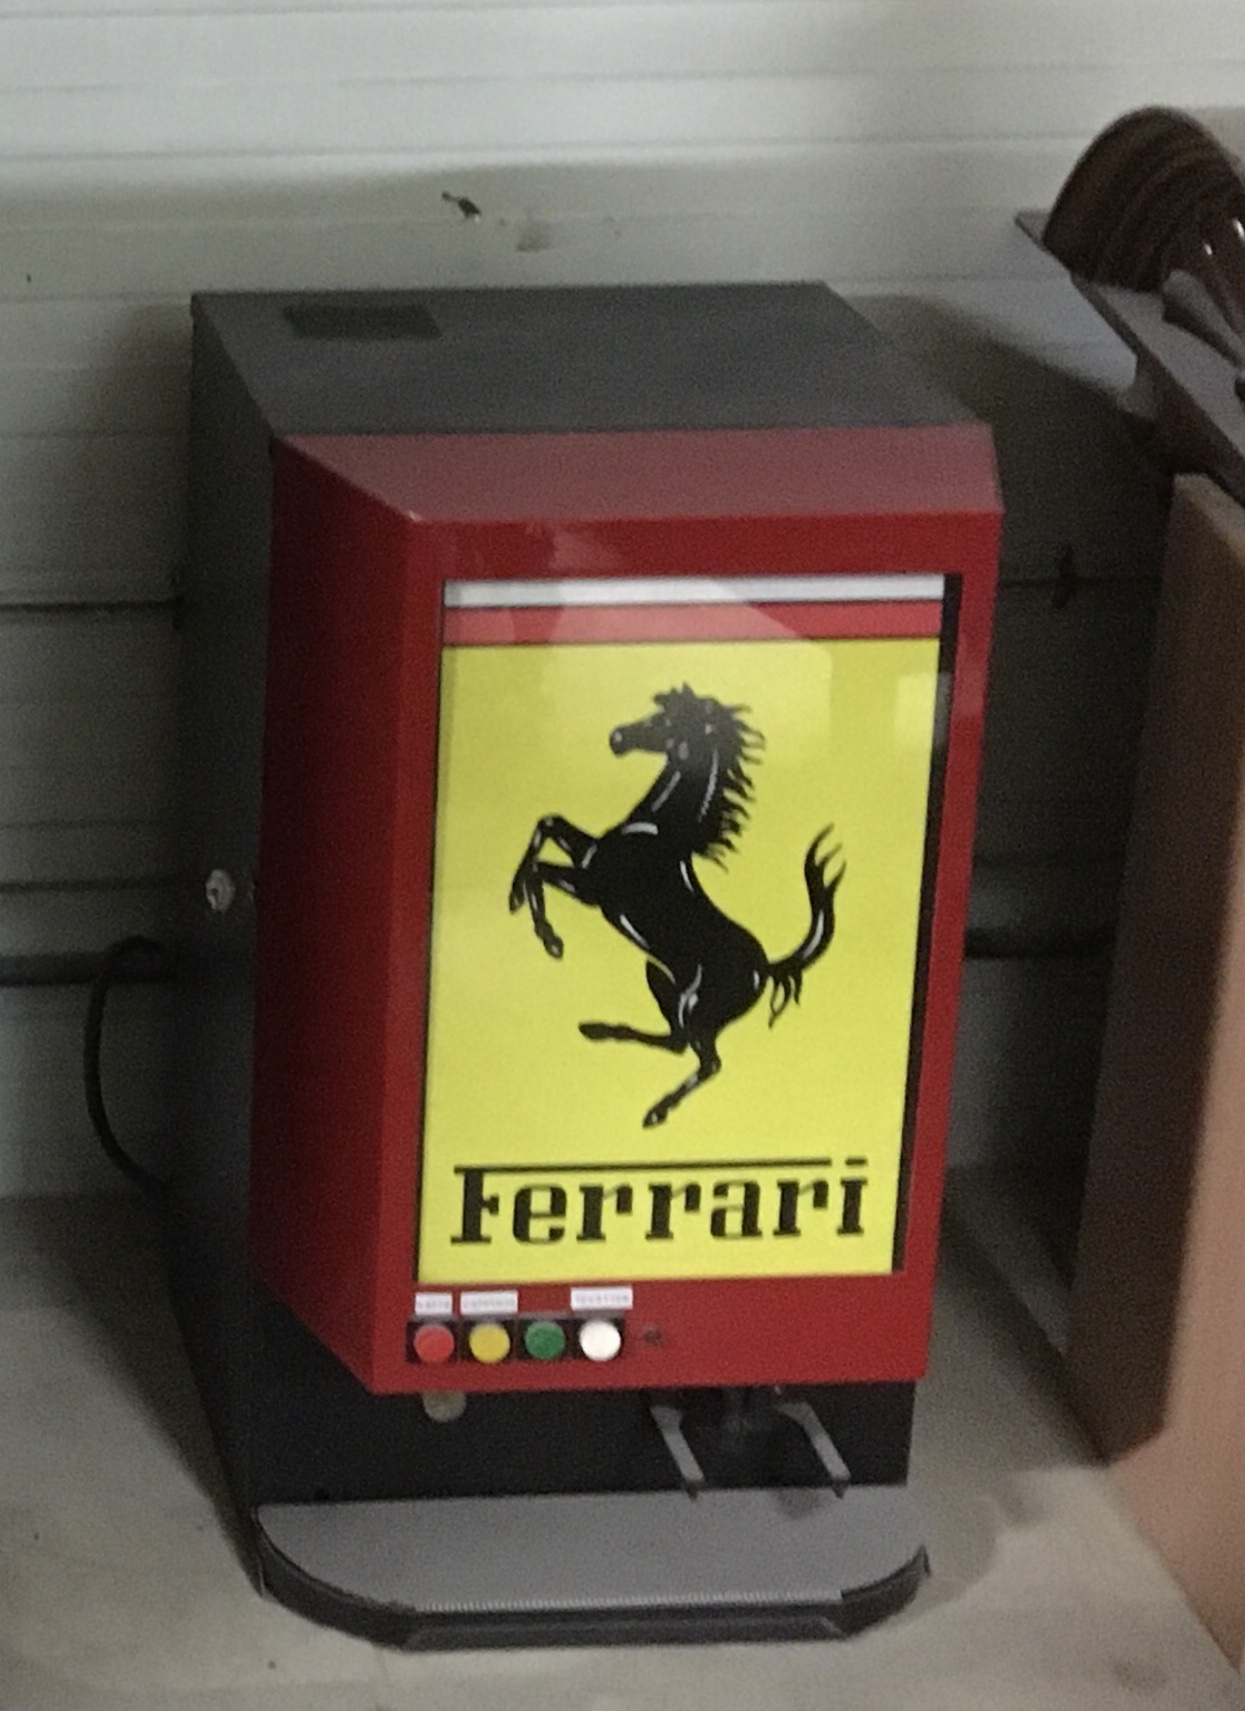 Coffee Machine "Ferrari" Style Small